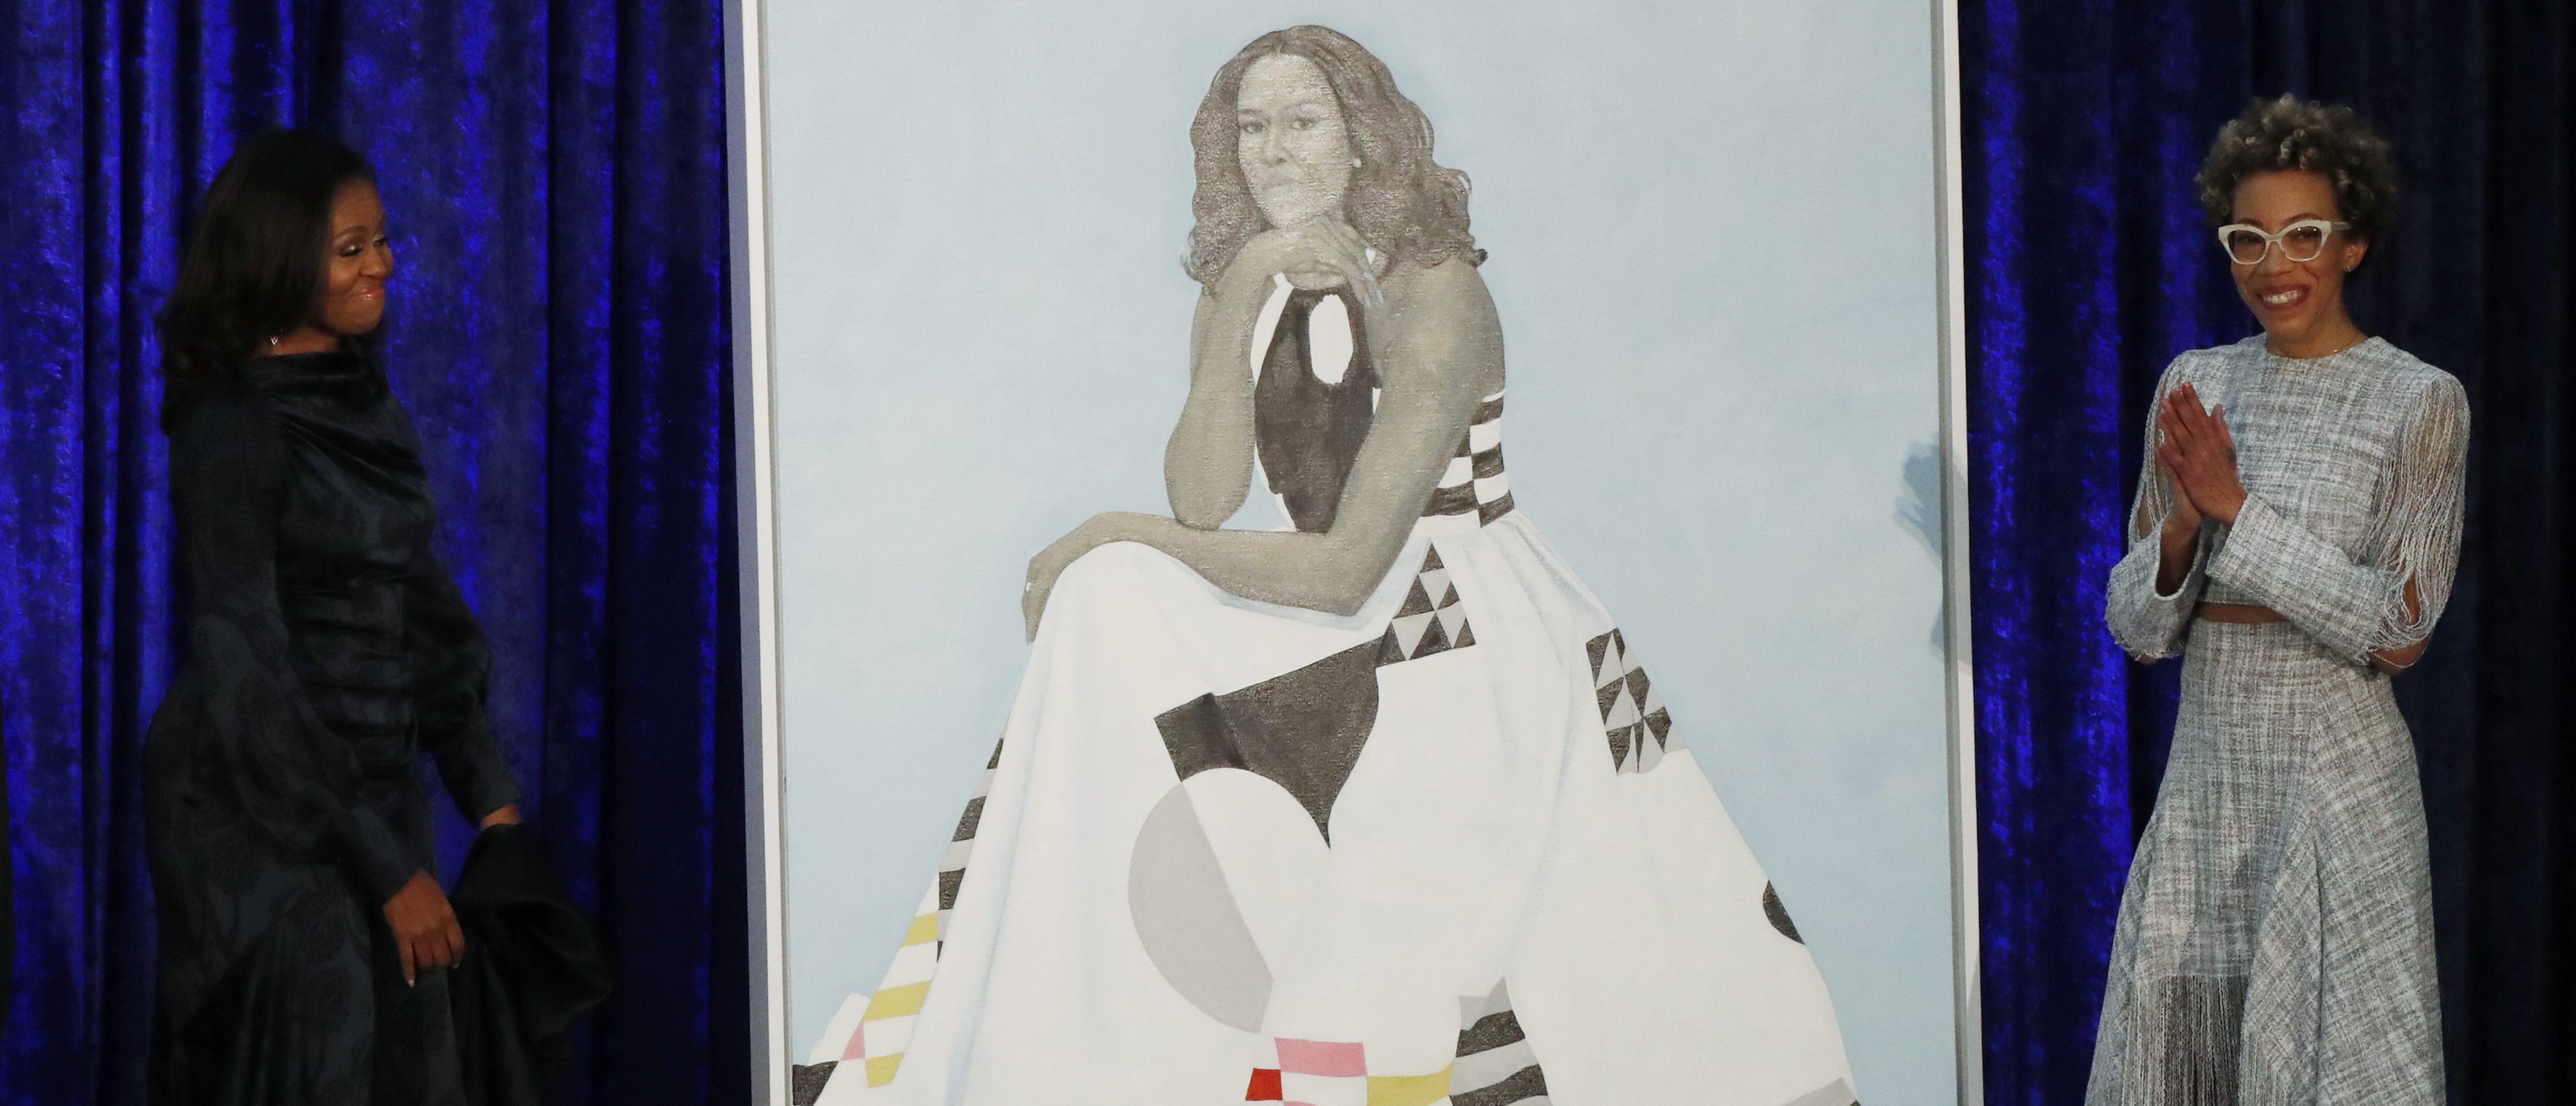 Michelle Obama portrait